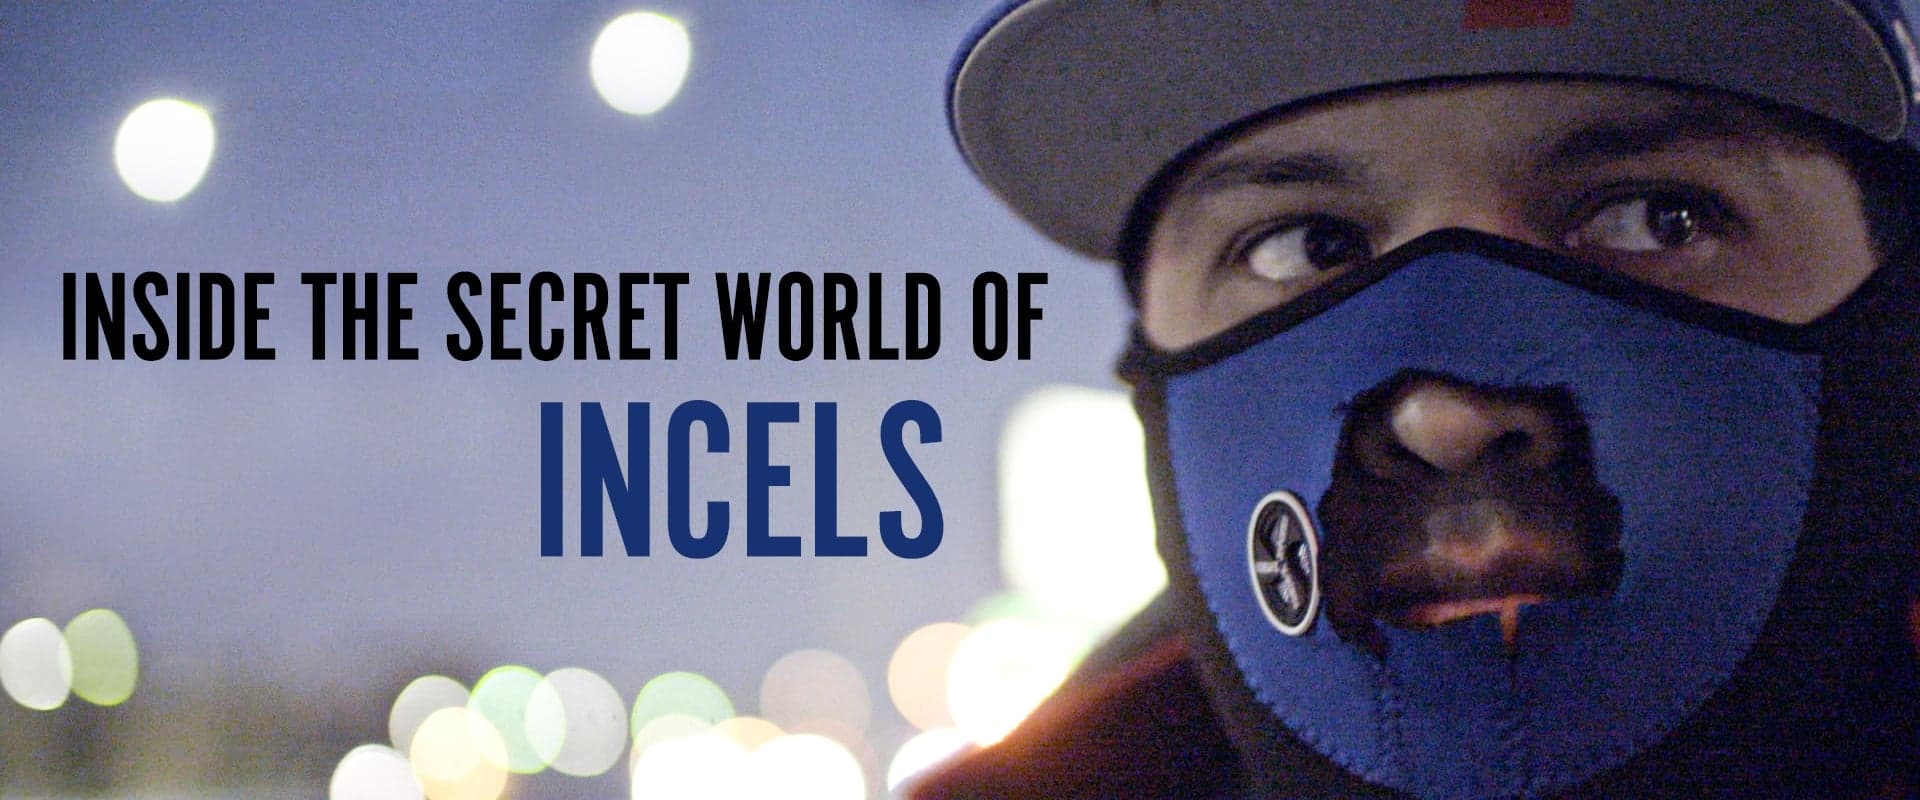 Inside The Secret World of Incels